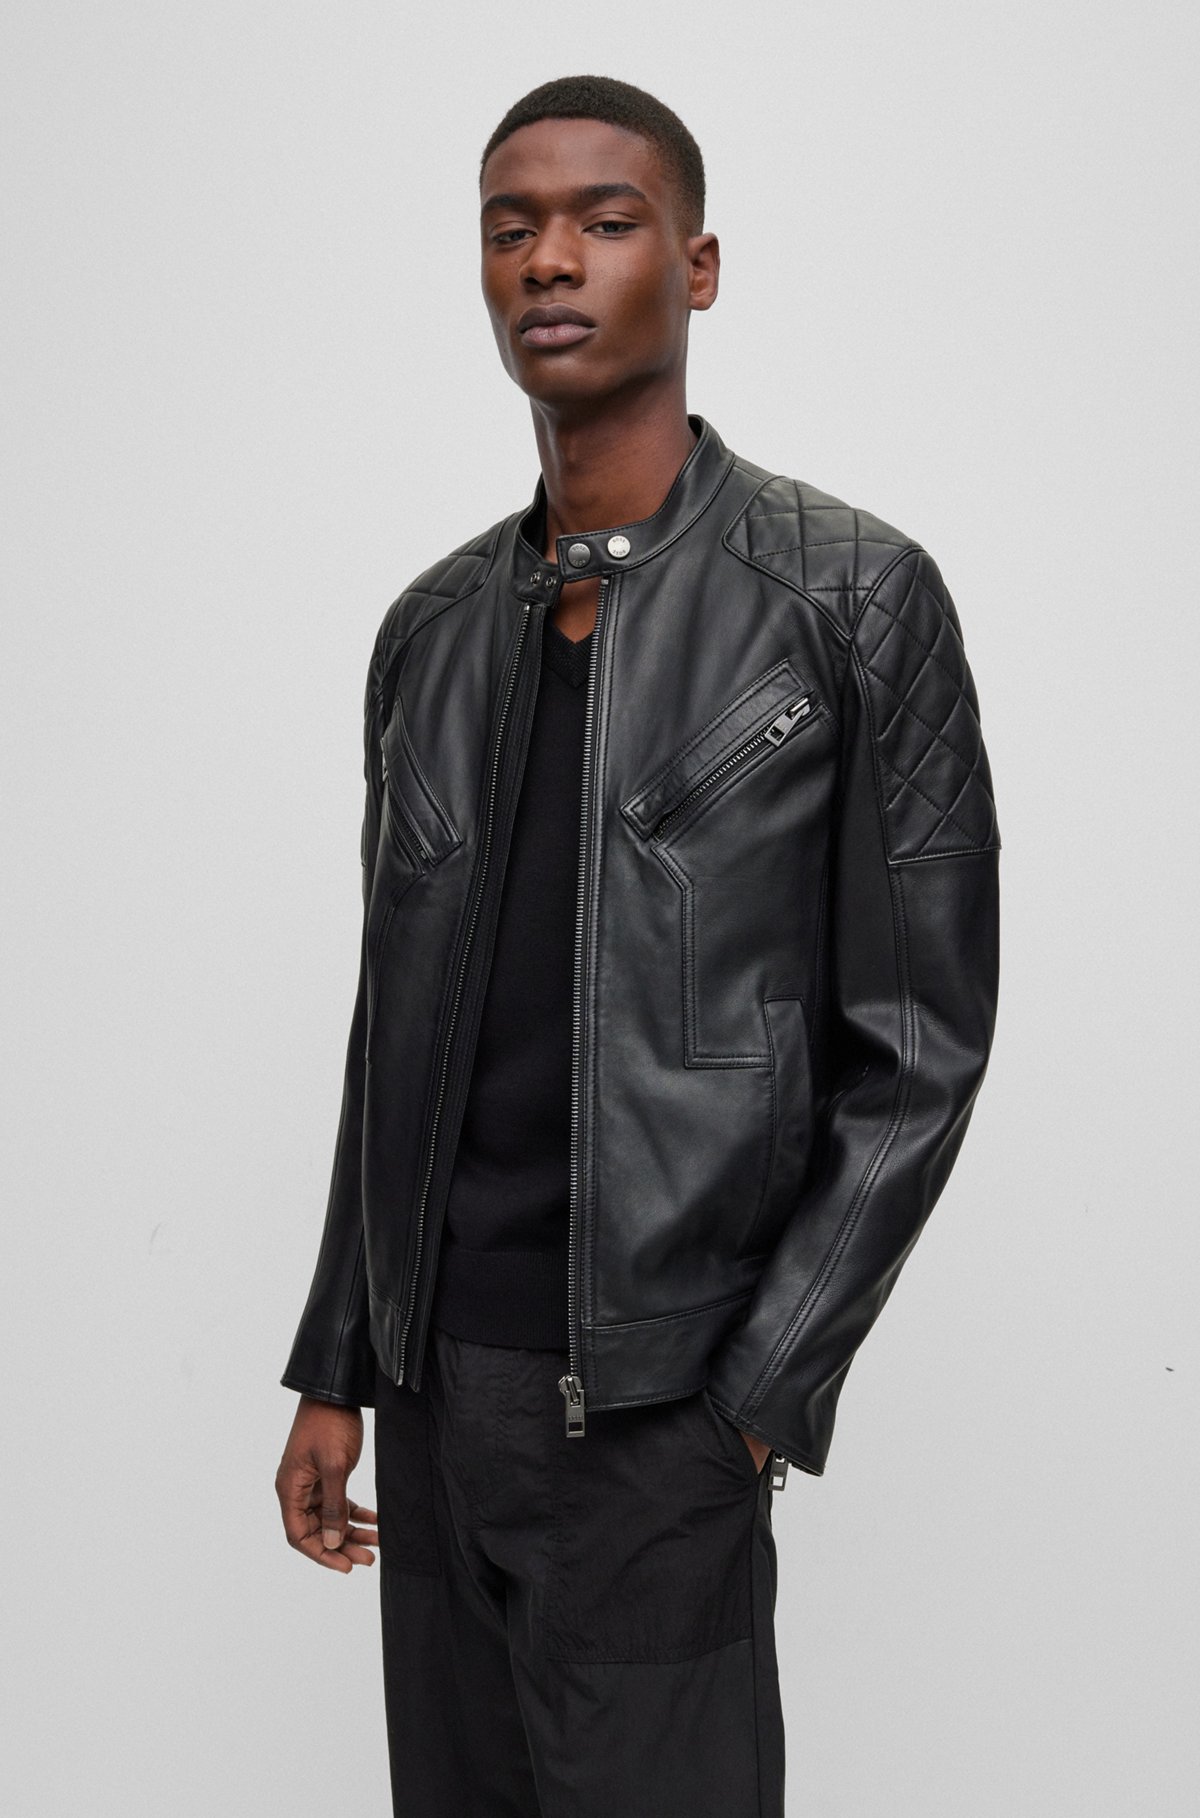 Hugo Boss Leather Biker Jacket Mens Sale Online | bellvalefarms.com